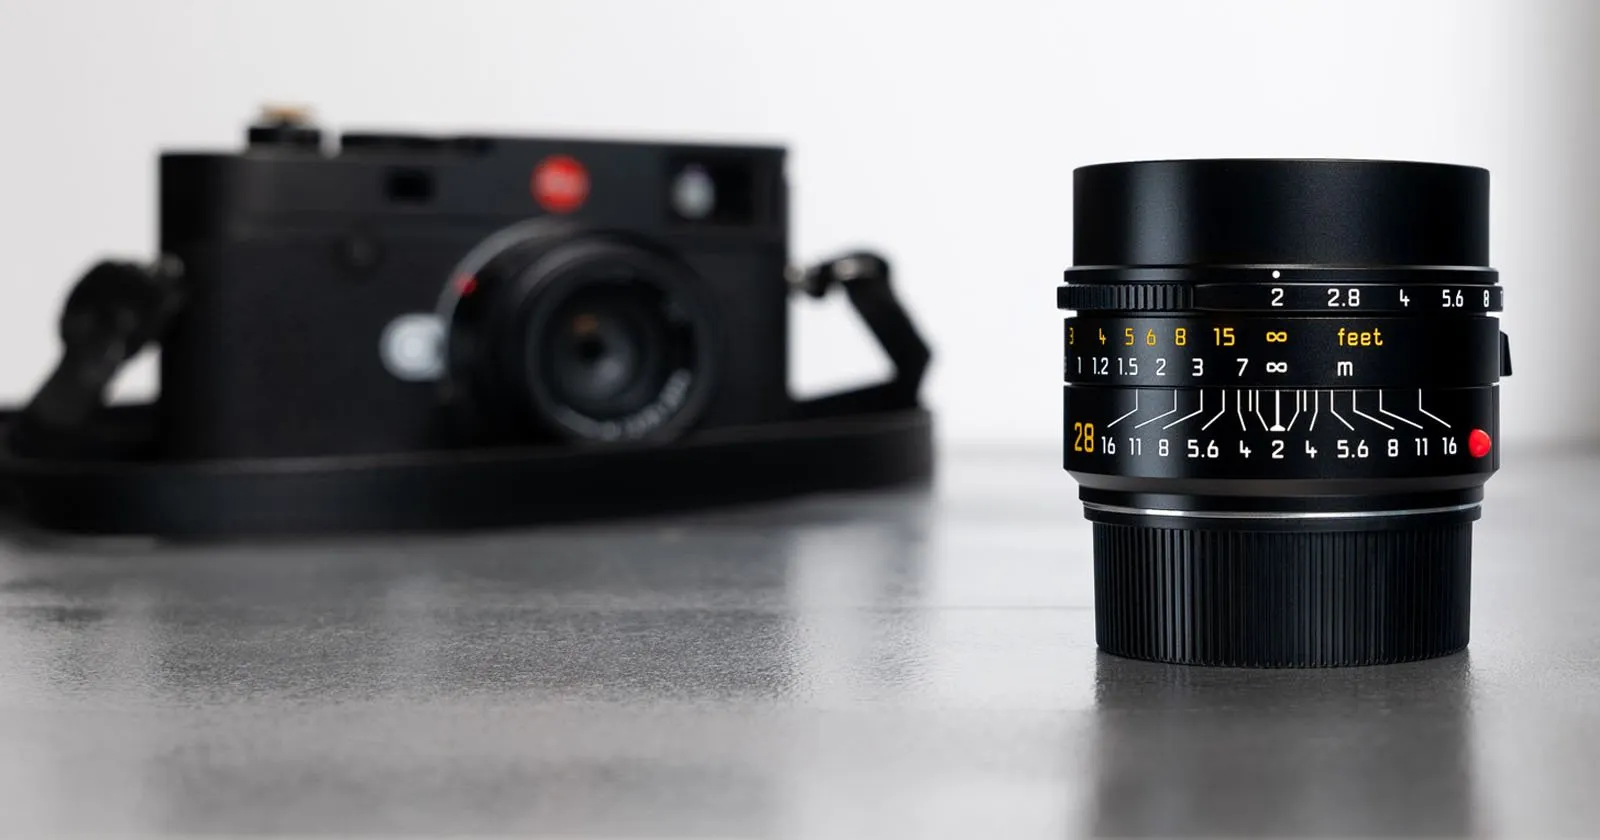 Leica ra mắt máy ảnh Leica M11-P, chiếc máy ảnh tích hợp các thông tin chứng thực nội dung đầu tiên trên thế giới